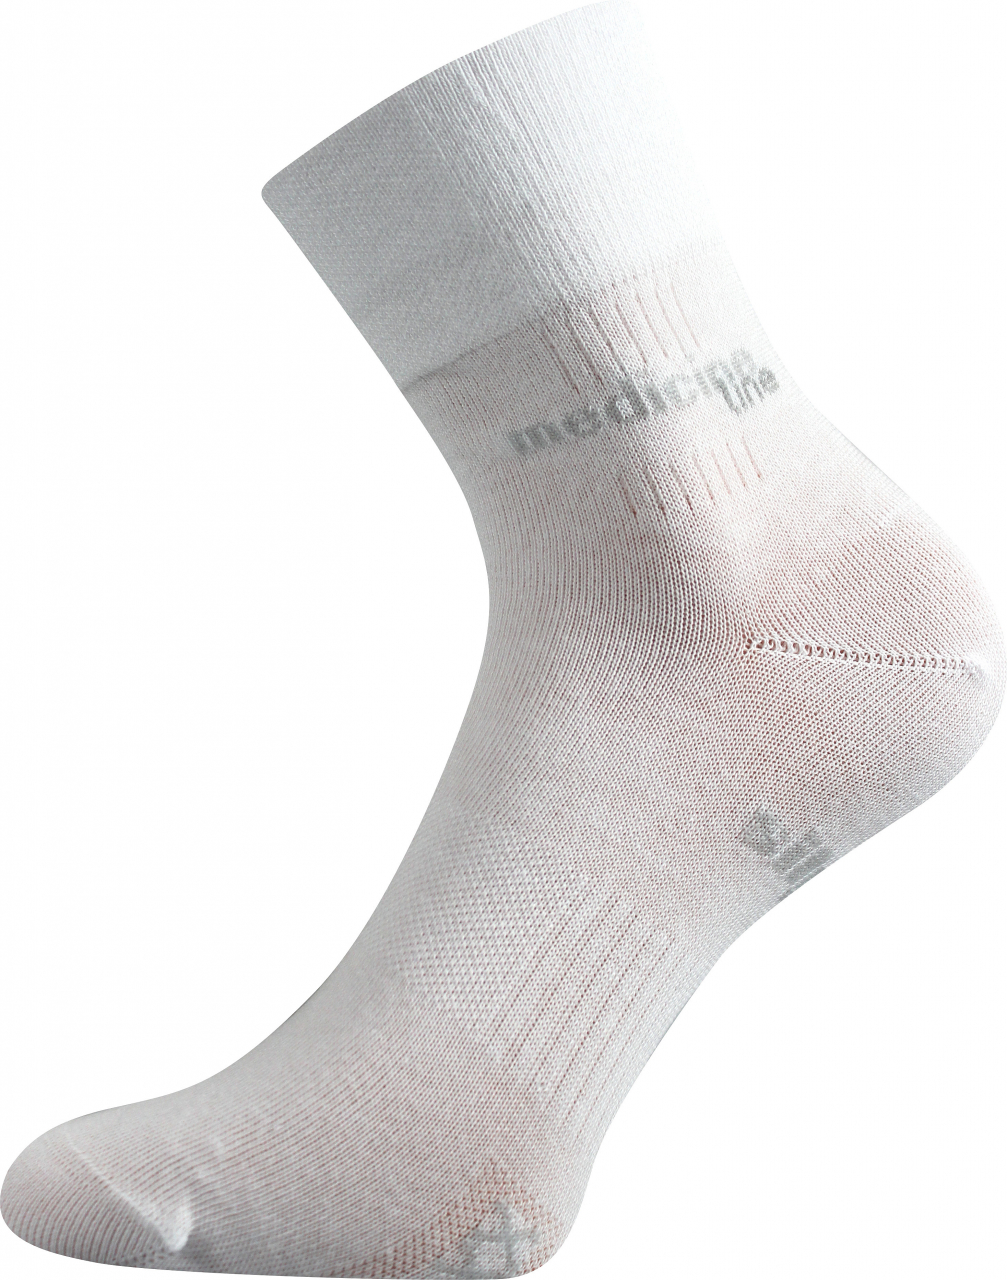 Ponožky zdravotní Mission Medicine - bílé, 39-42